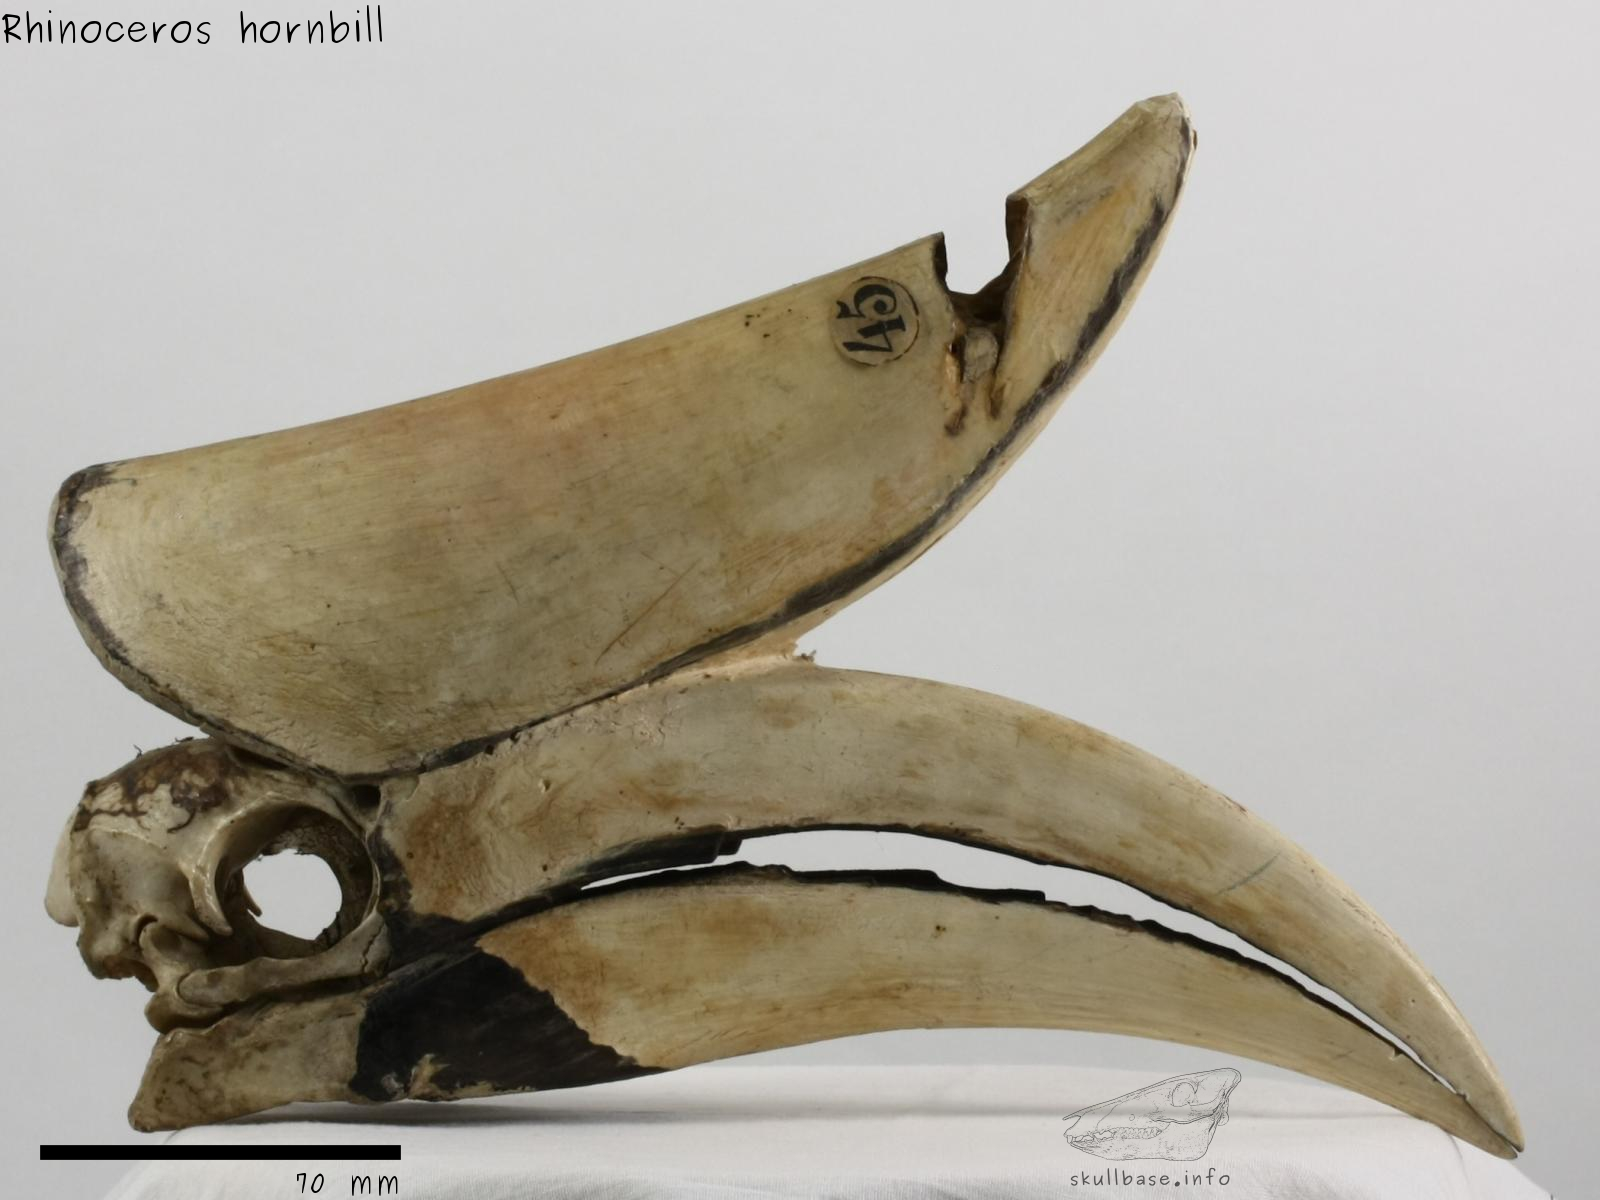 Rhinoceros hornbill (Buceros rhinoceros) skull lateral view